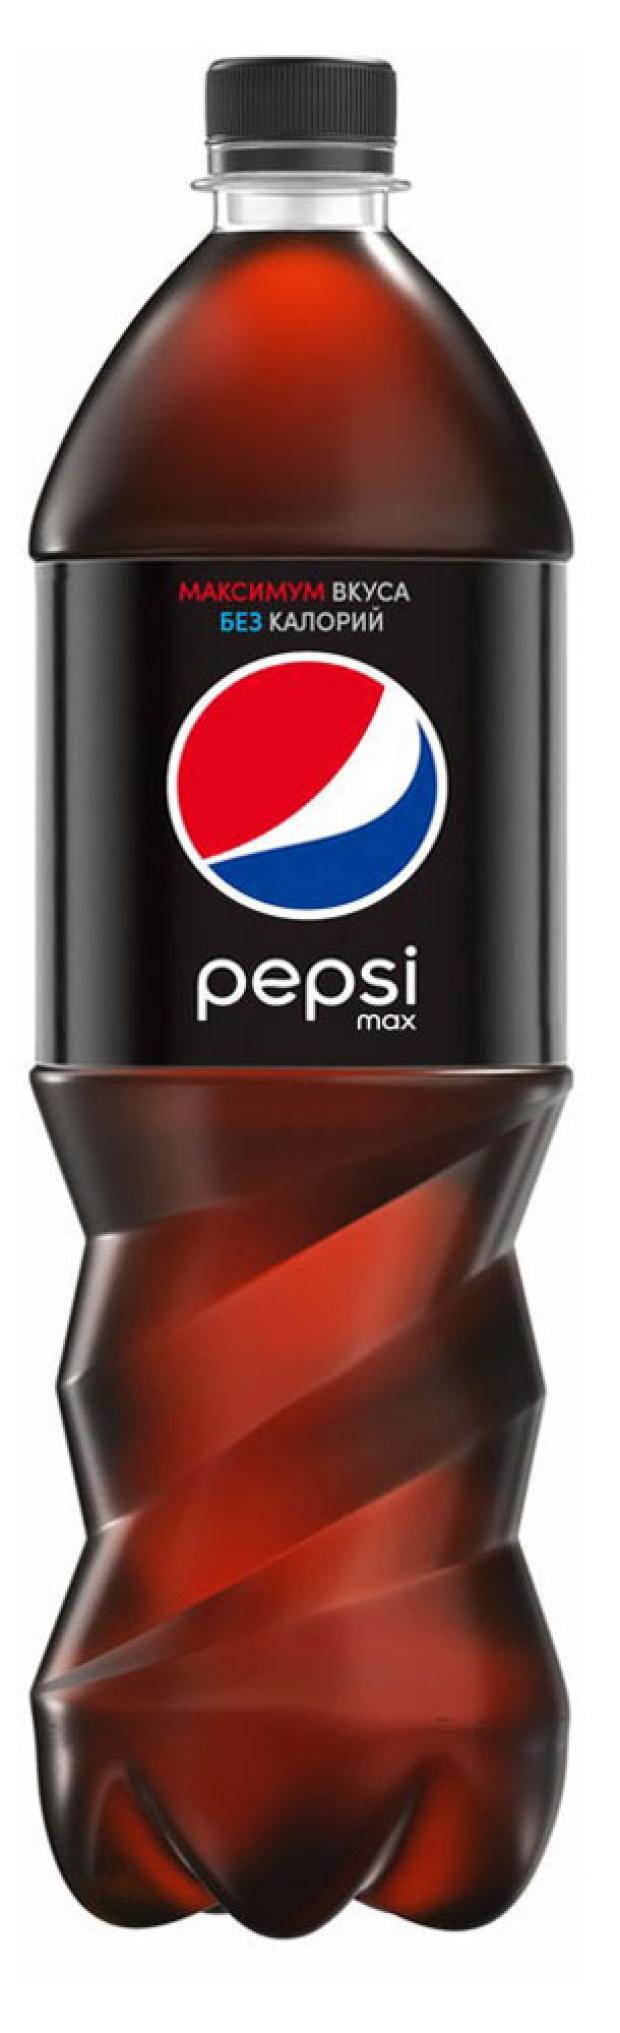 Напиток сильногазированный Pepsi Max black, 1 л